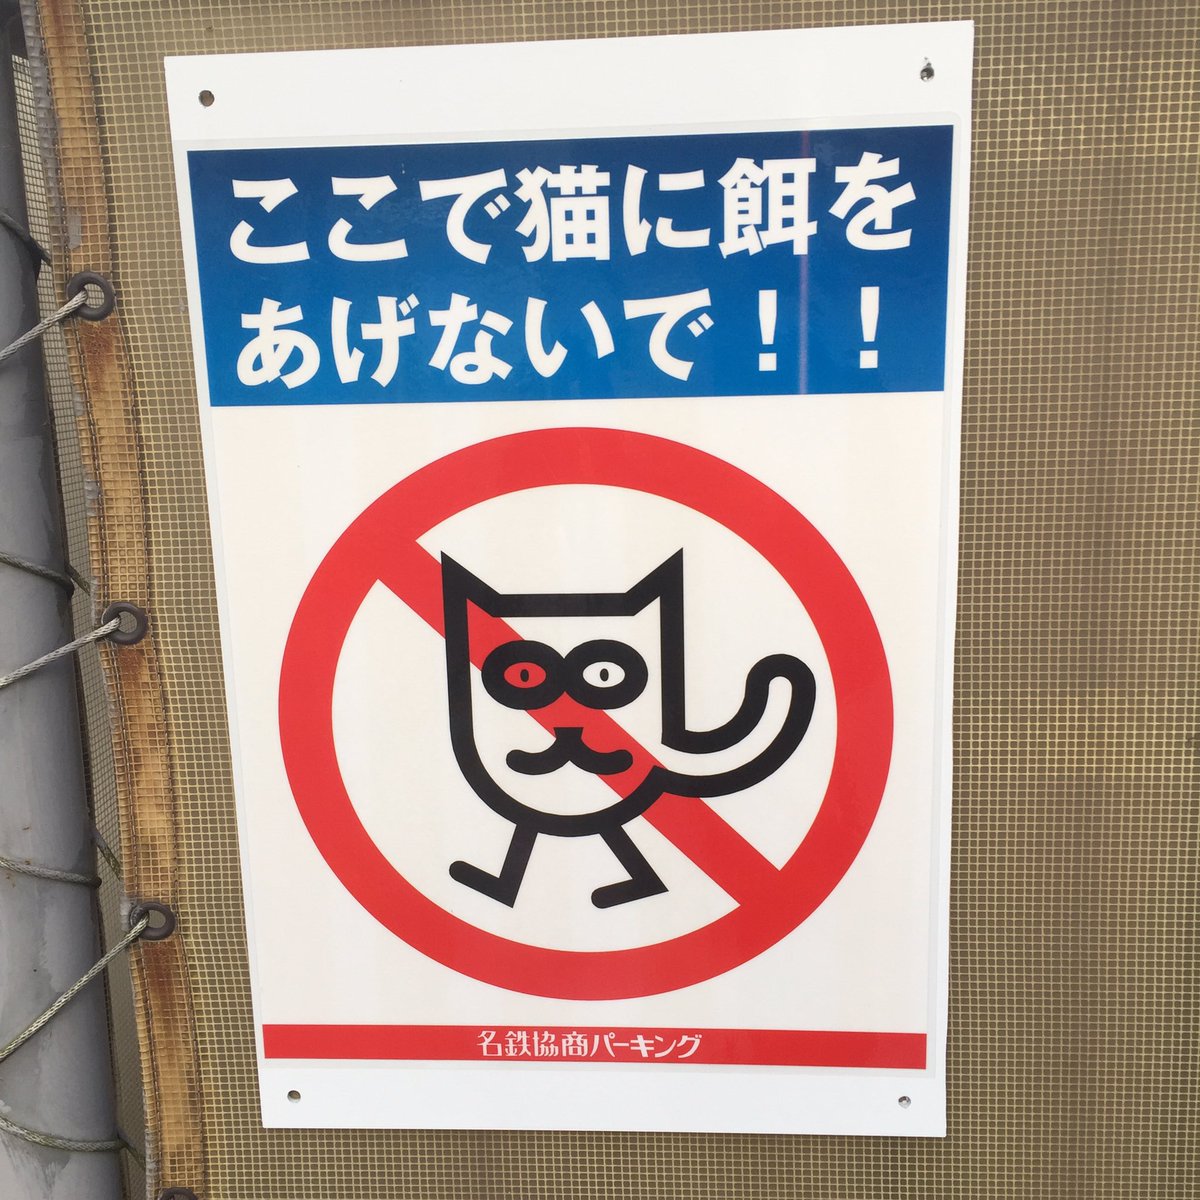 エサやり禁止 ポスターの味がある猫のイラストが話題に 16年5月19日掲載 ライブドアニュース